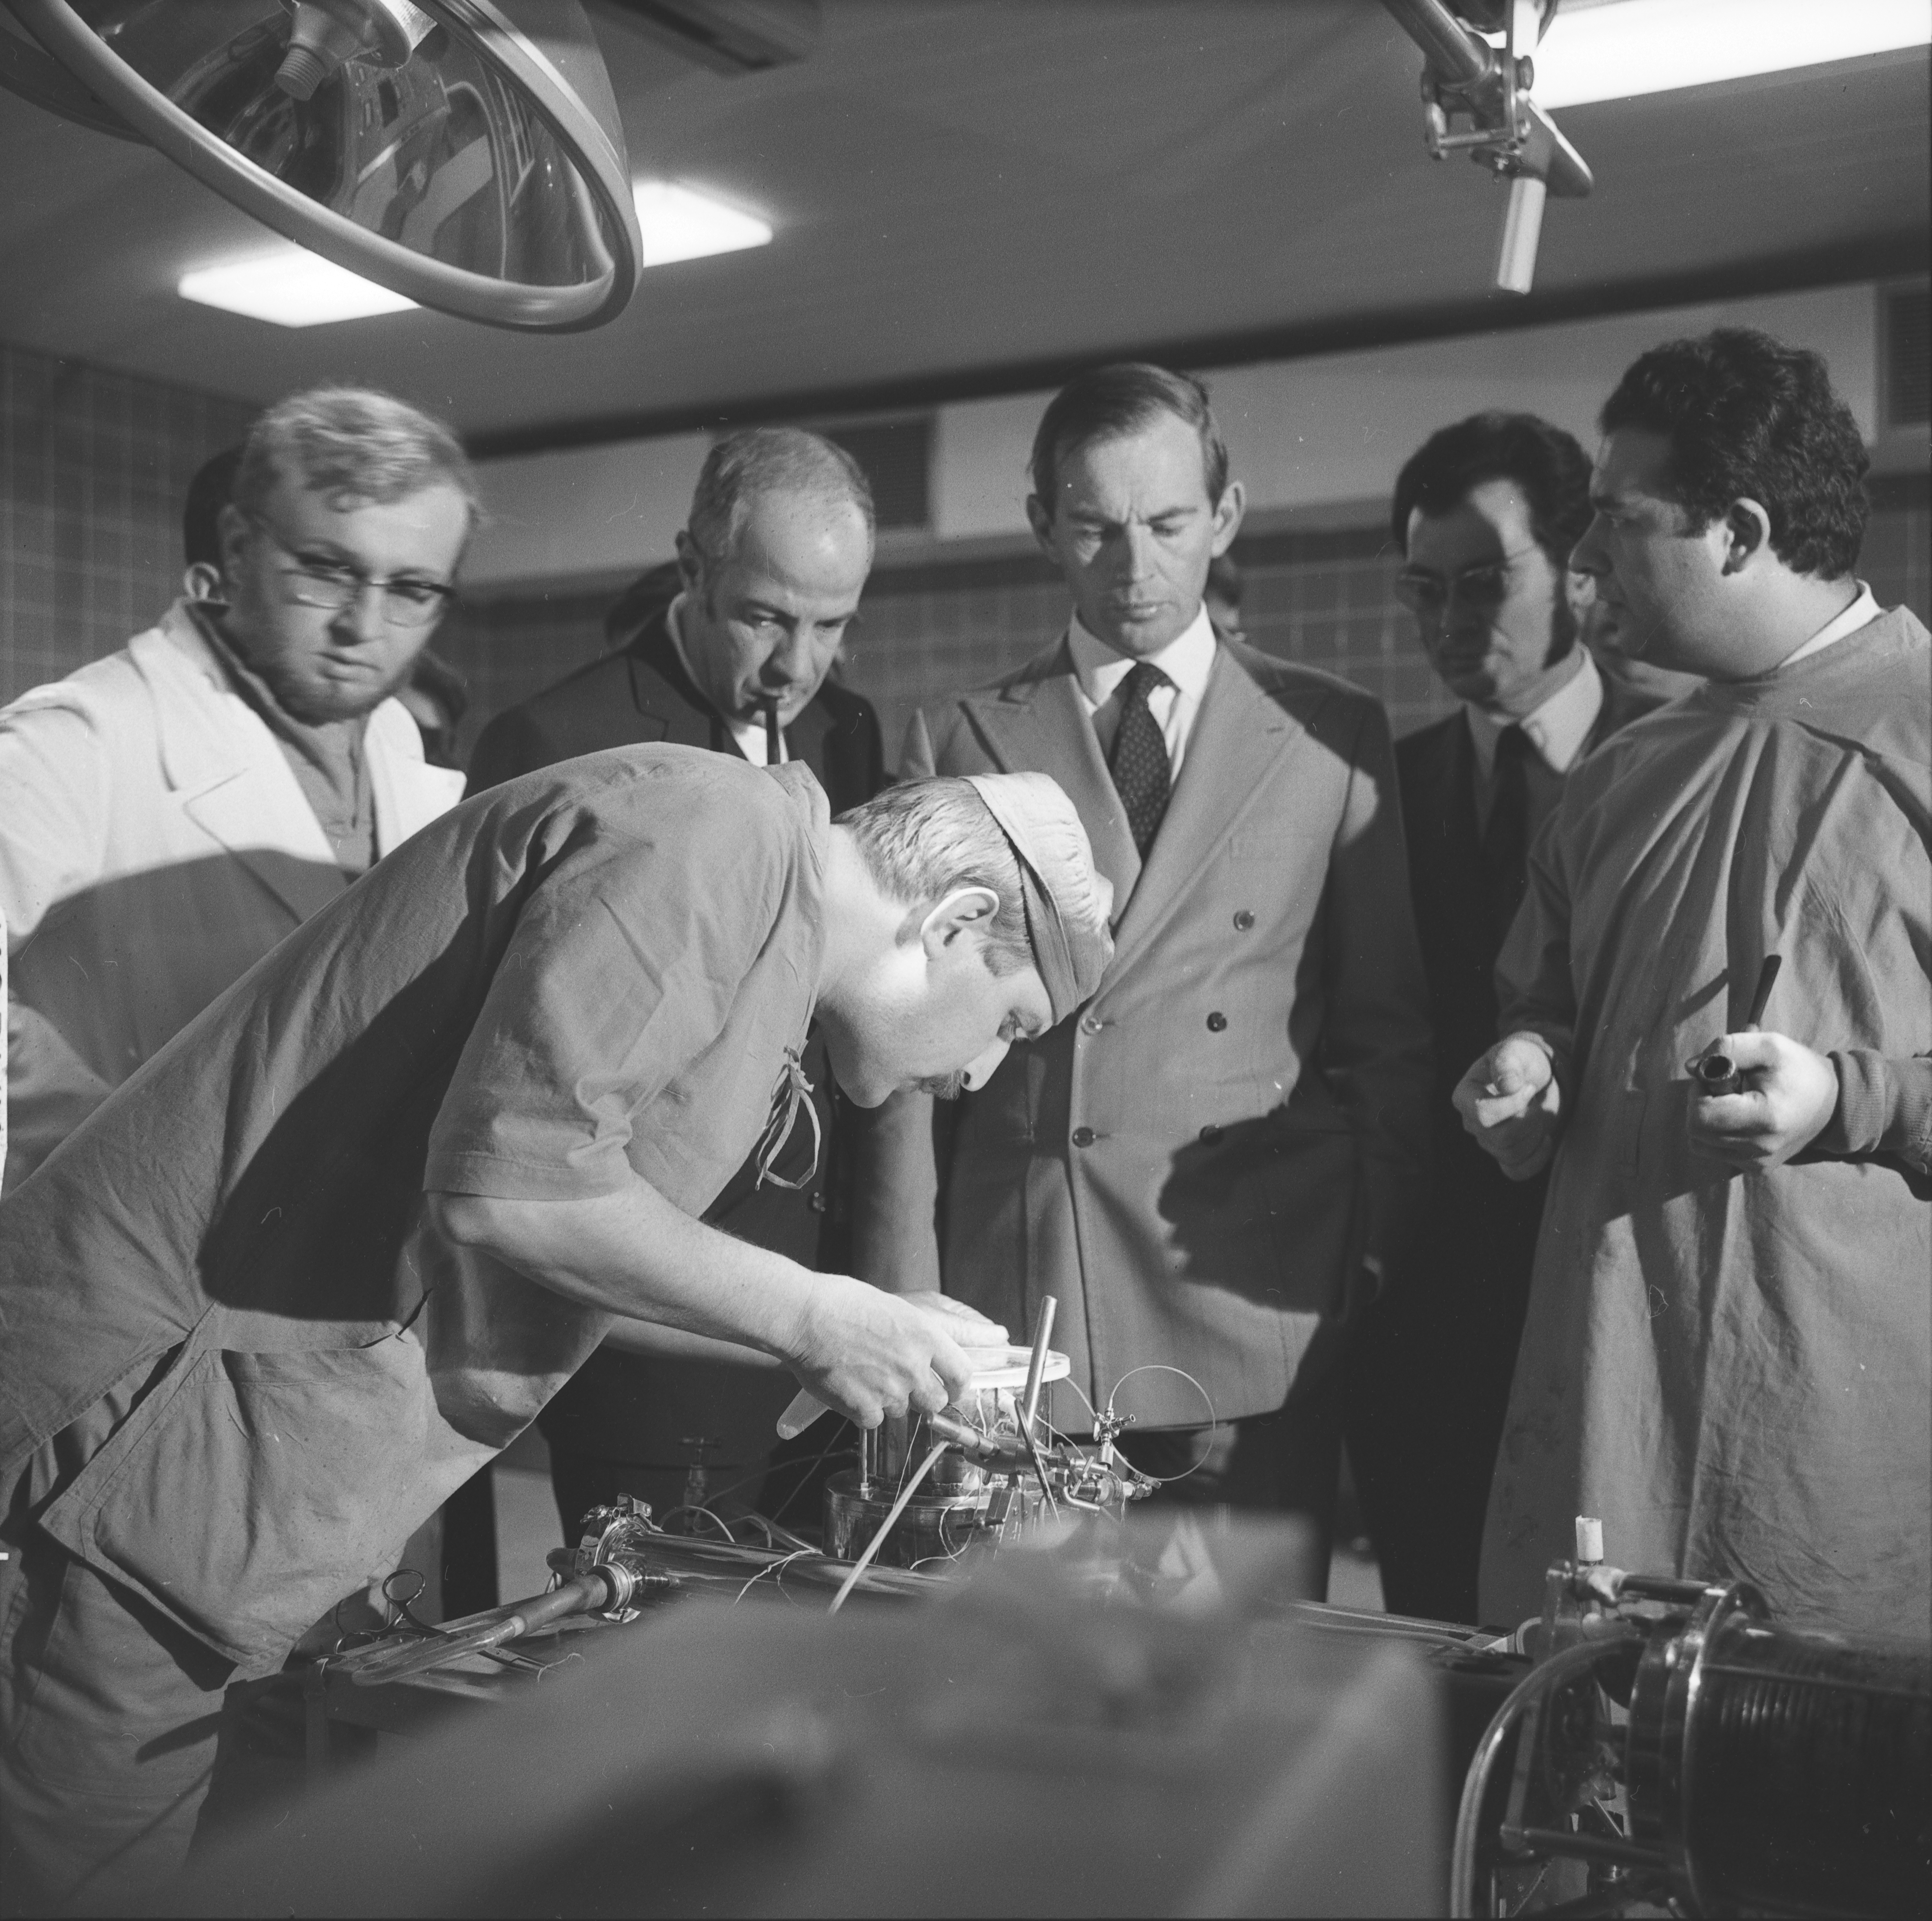 А вот первая пересадка человеческого сердца произошла в 1967г. Кристианом Барнардом. Сердце 25летнего парня погибшего в автокатастрофе было пересажено 57летнему пациенту, но он прожил 18 дней и умер от пневмонии.